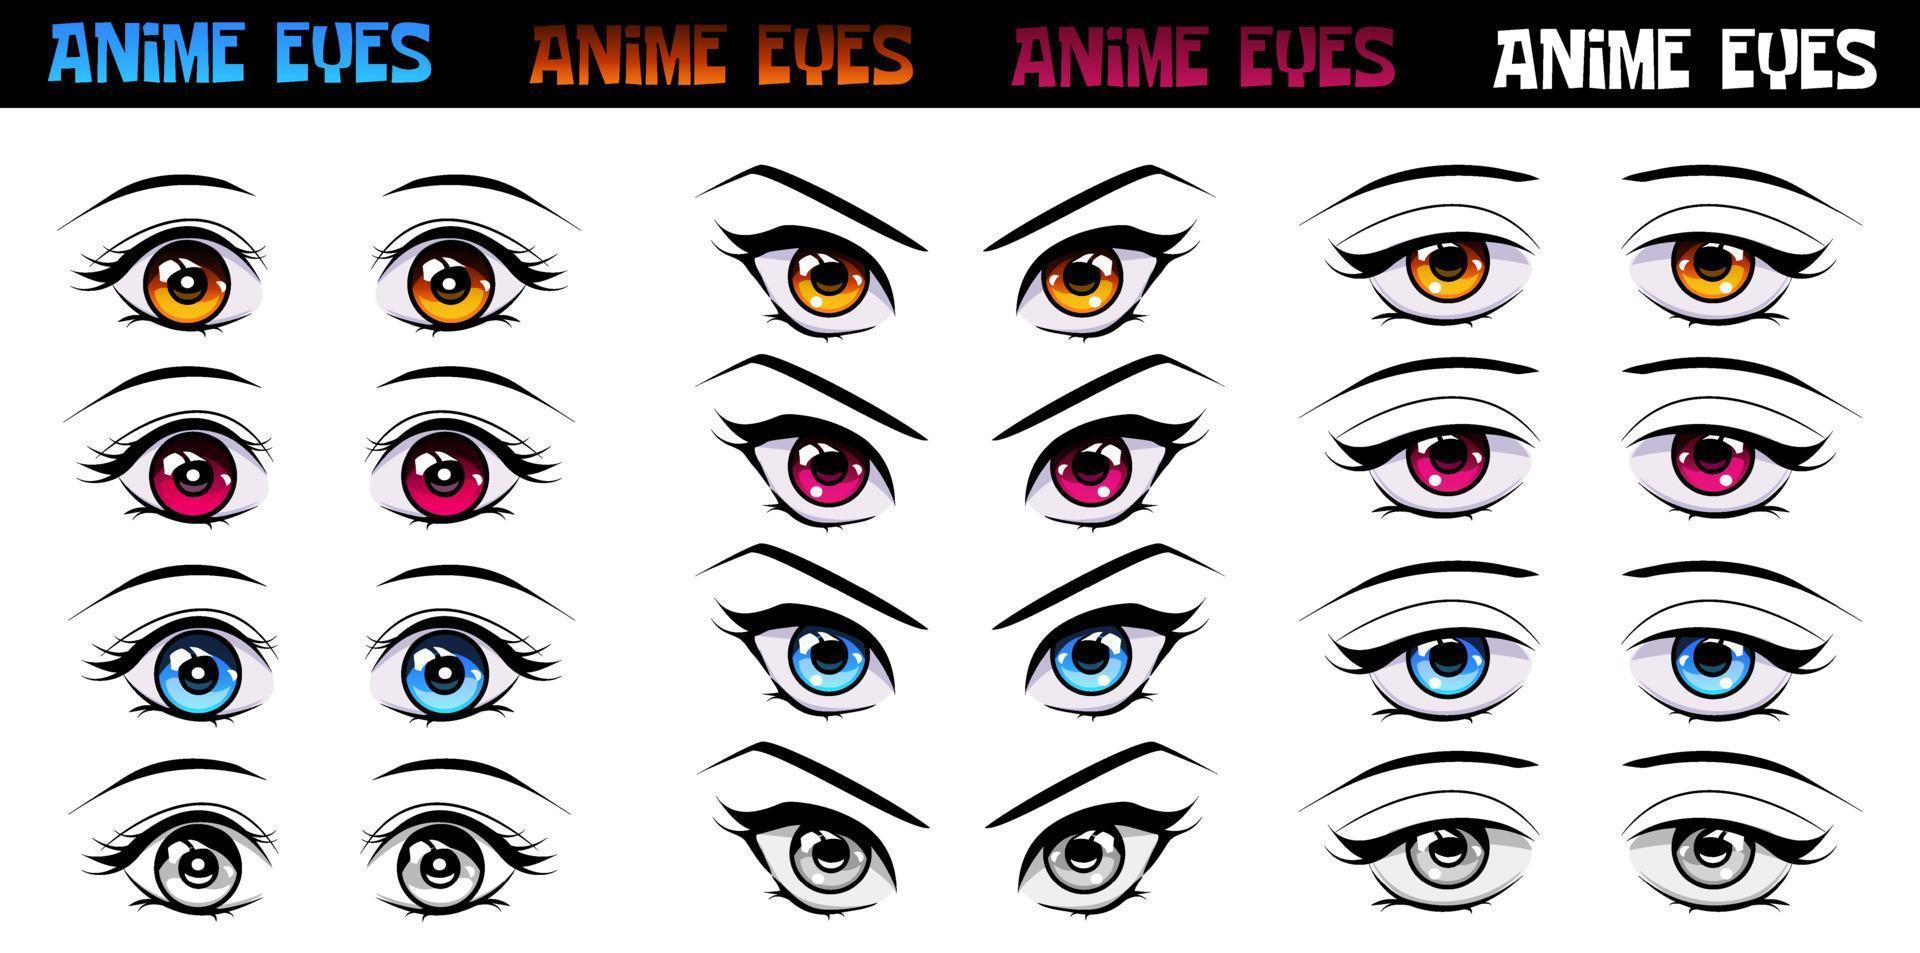 Anime eye styles by PinkFireFly on DeviantArt  Anime eye drawing Eye  drawing tutorials Eye drawing